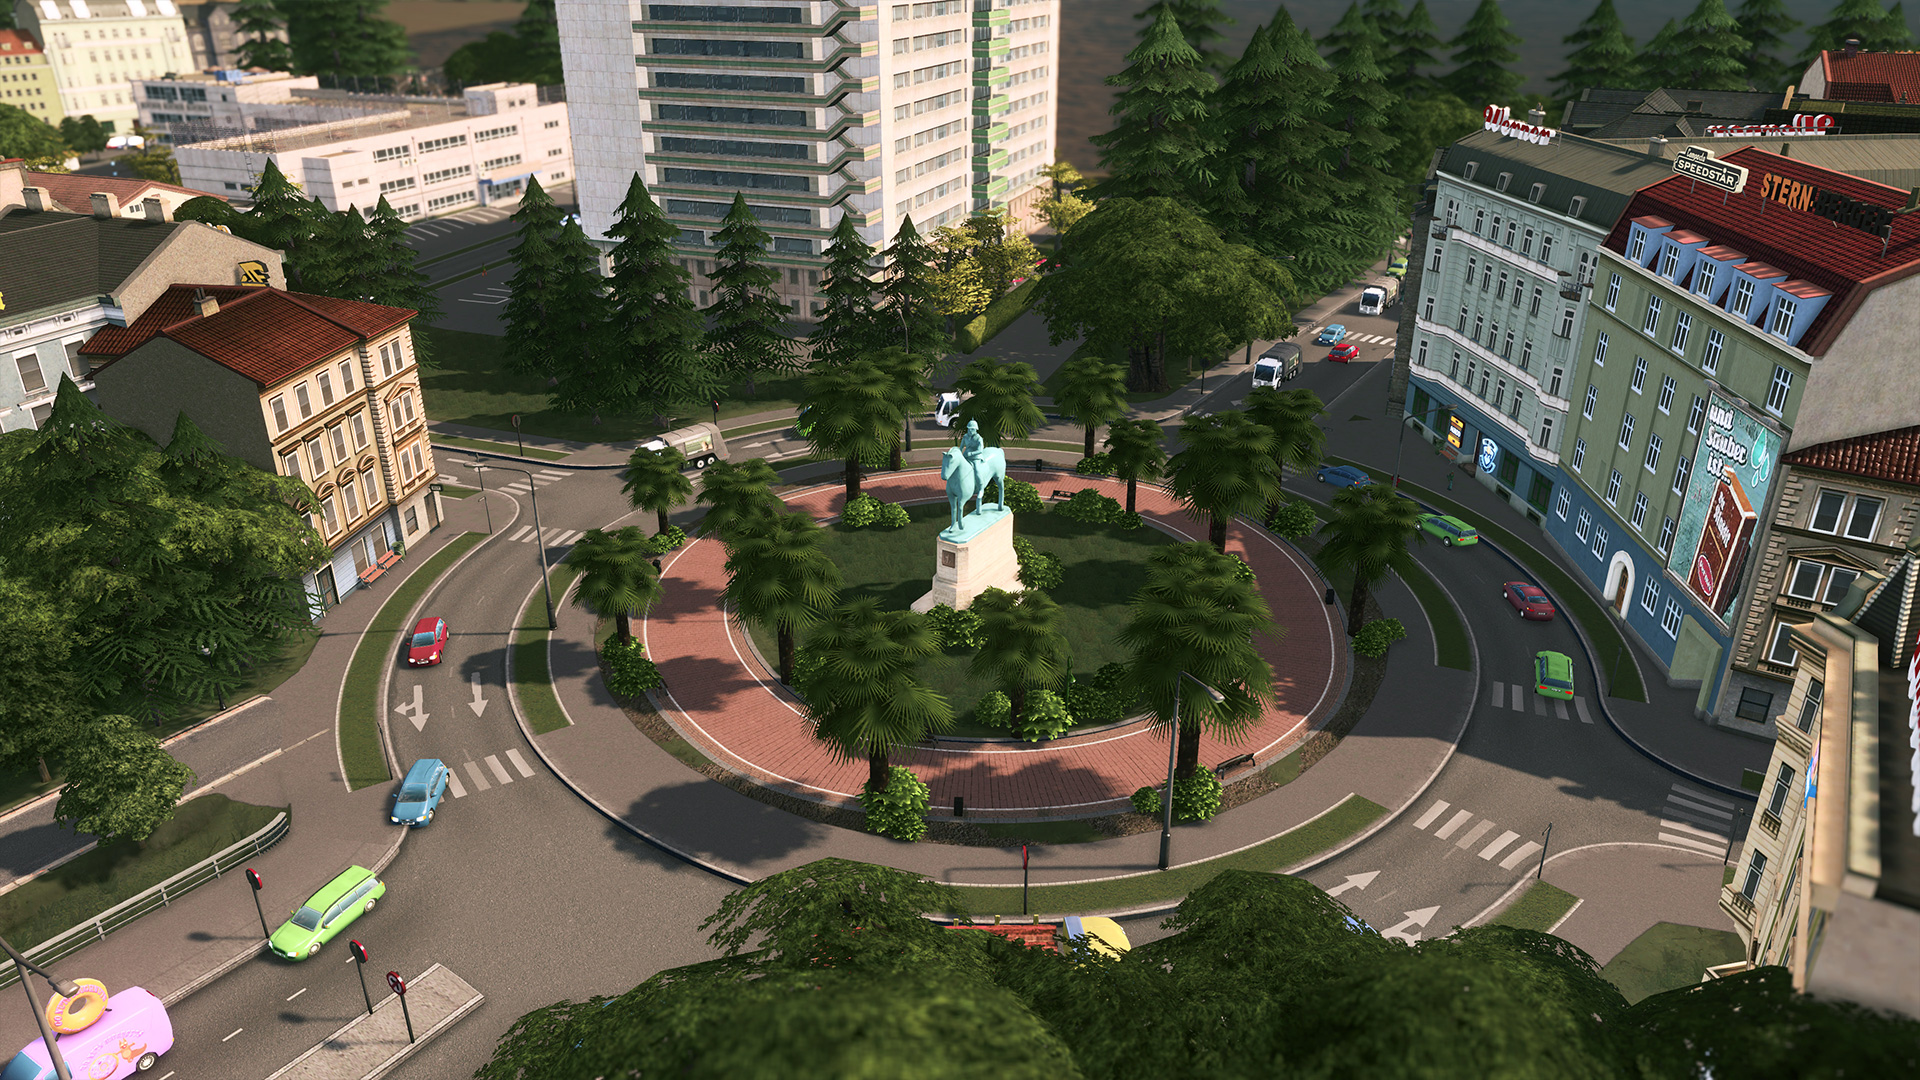 Cities: Skylines - Parklife [DLC]